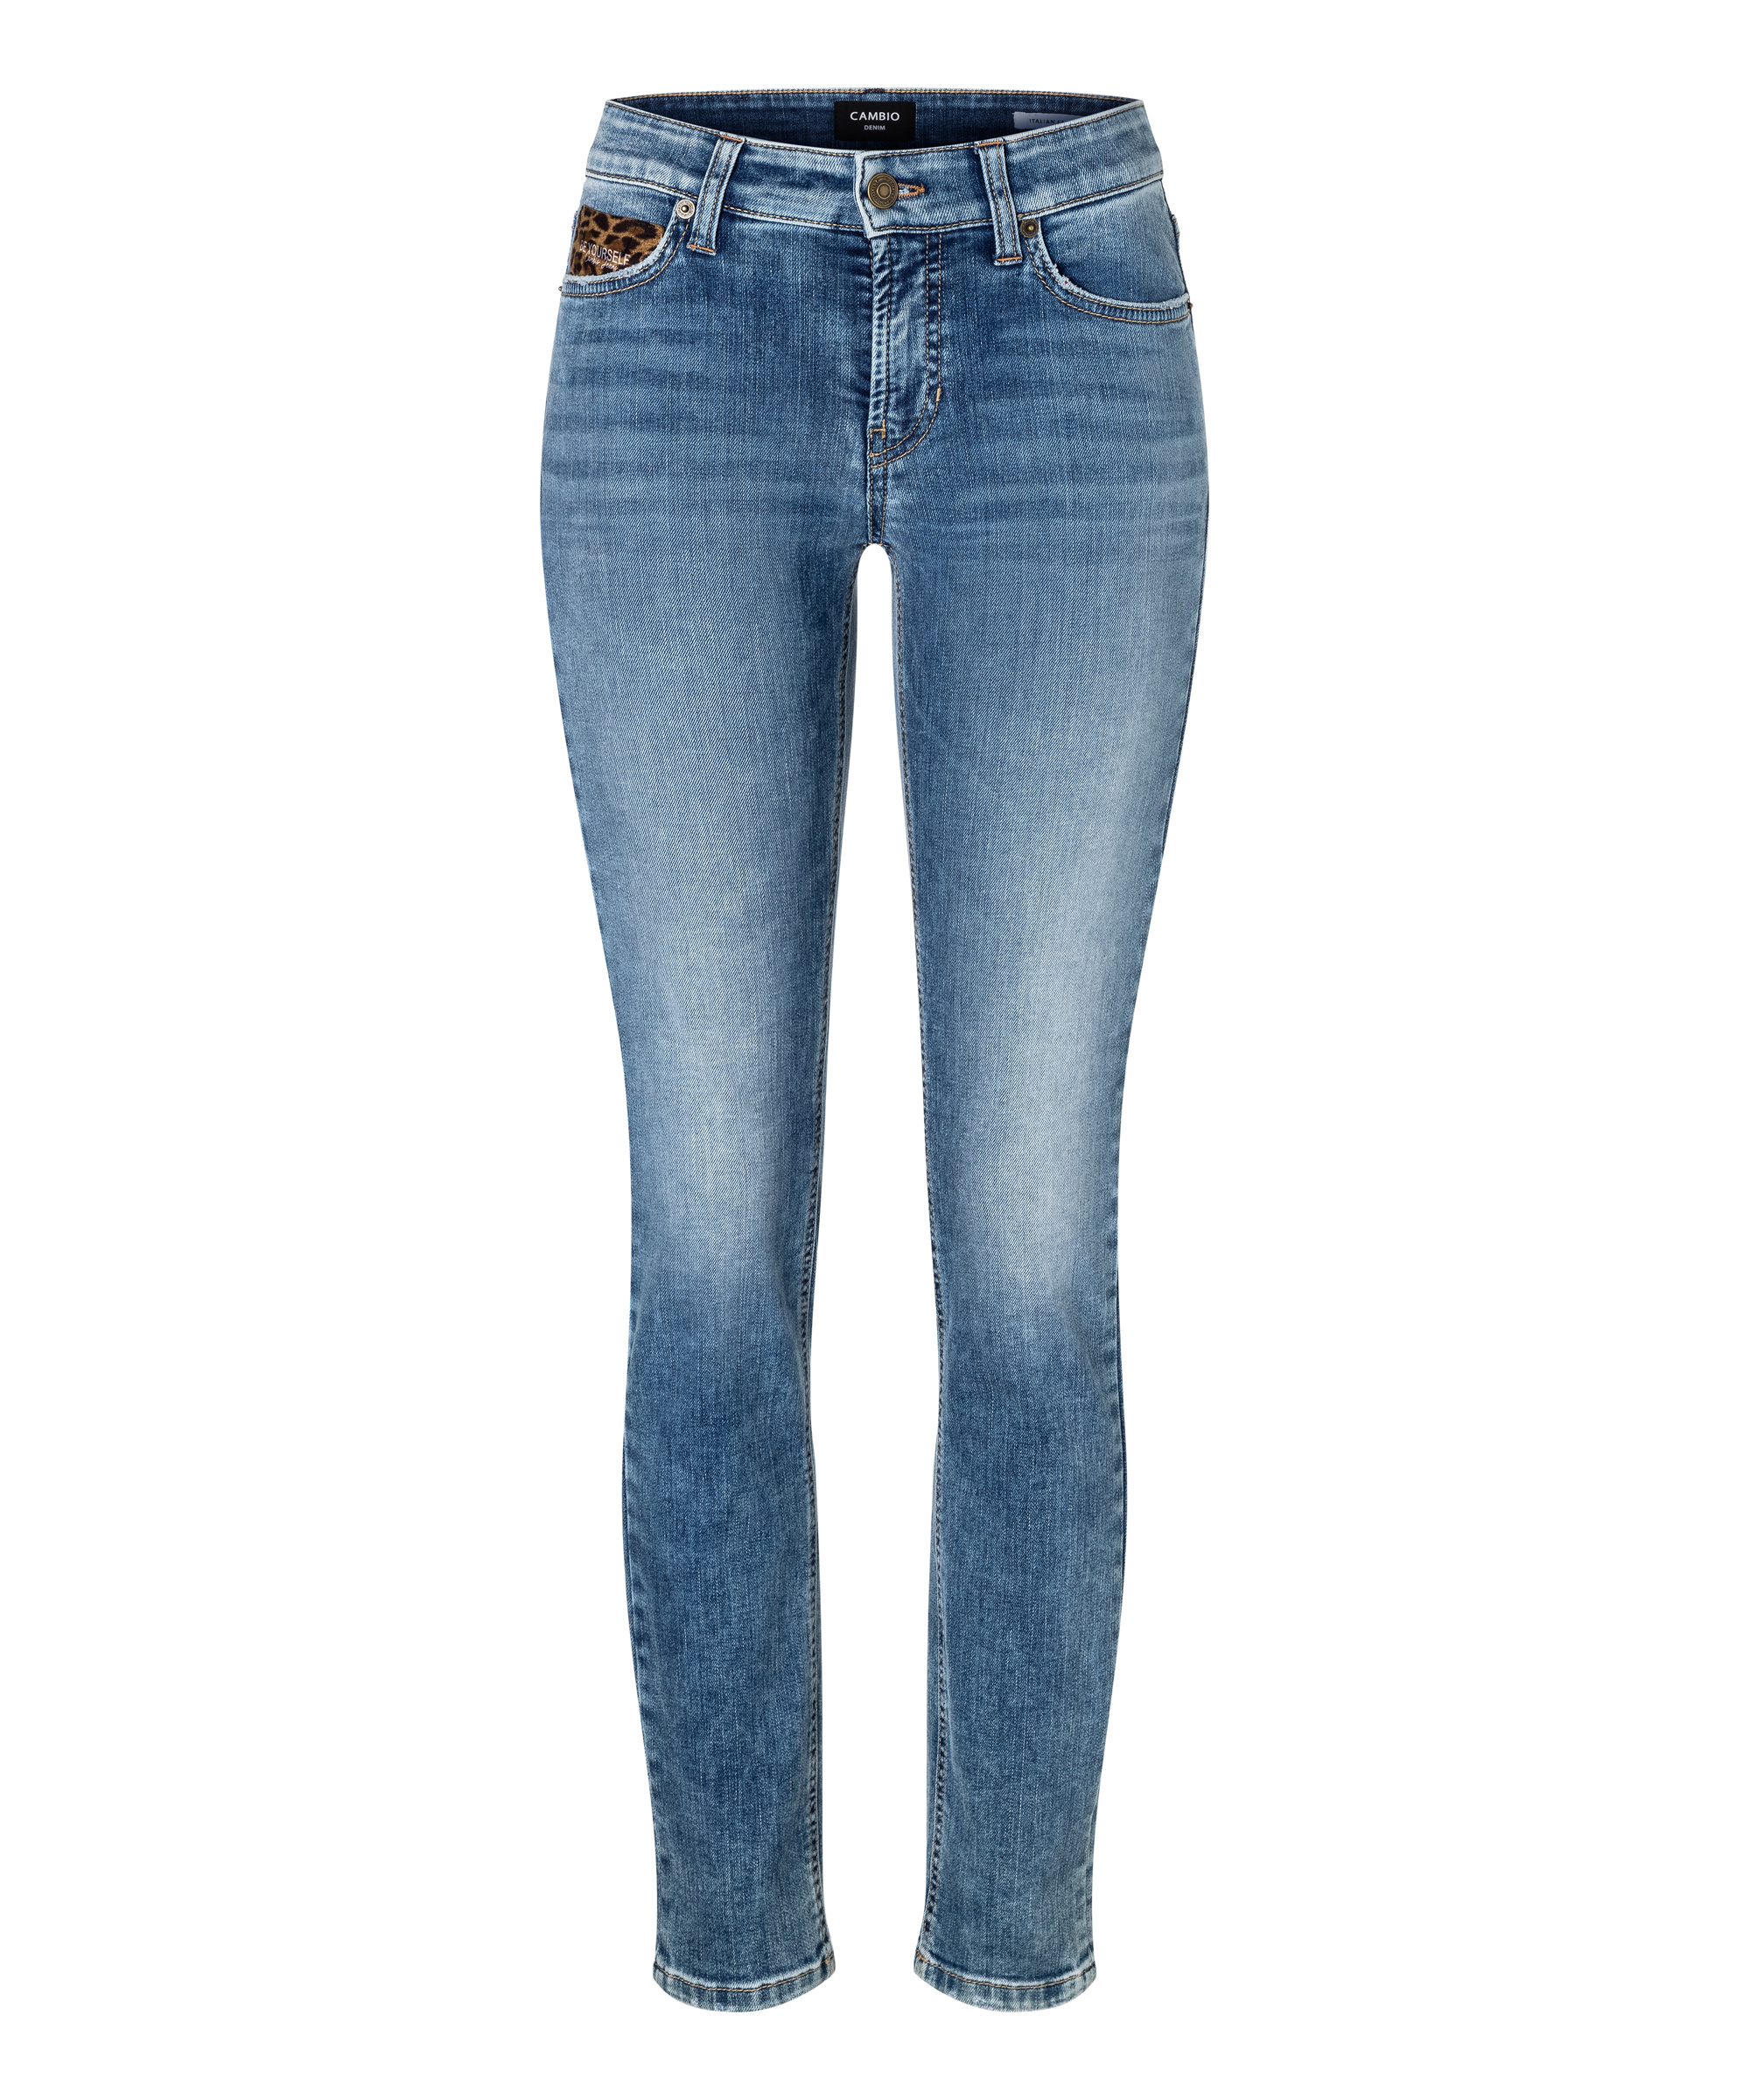 Cambio - Paris jeans - 46 - Dames